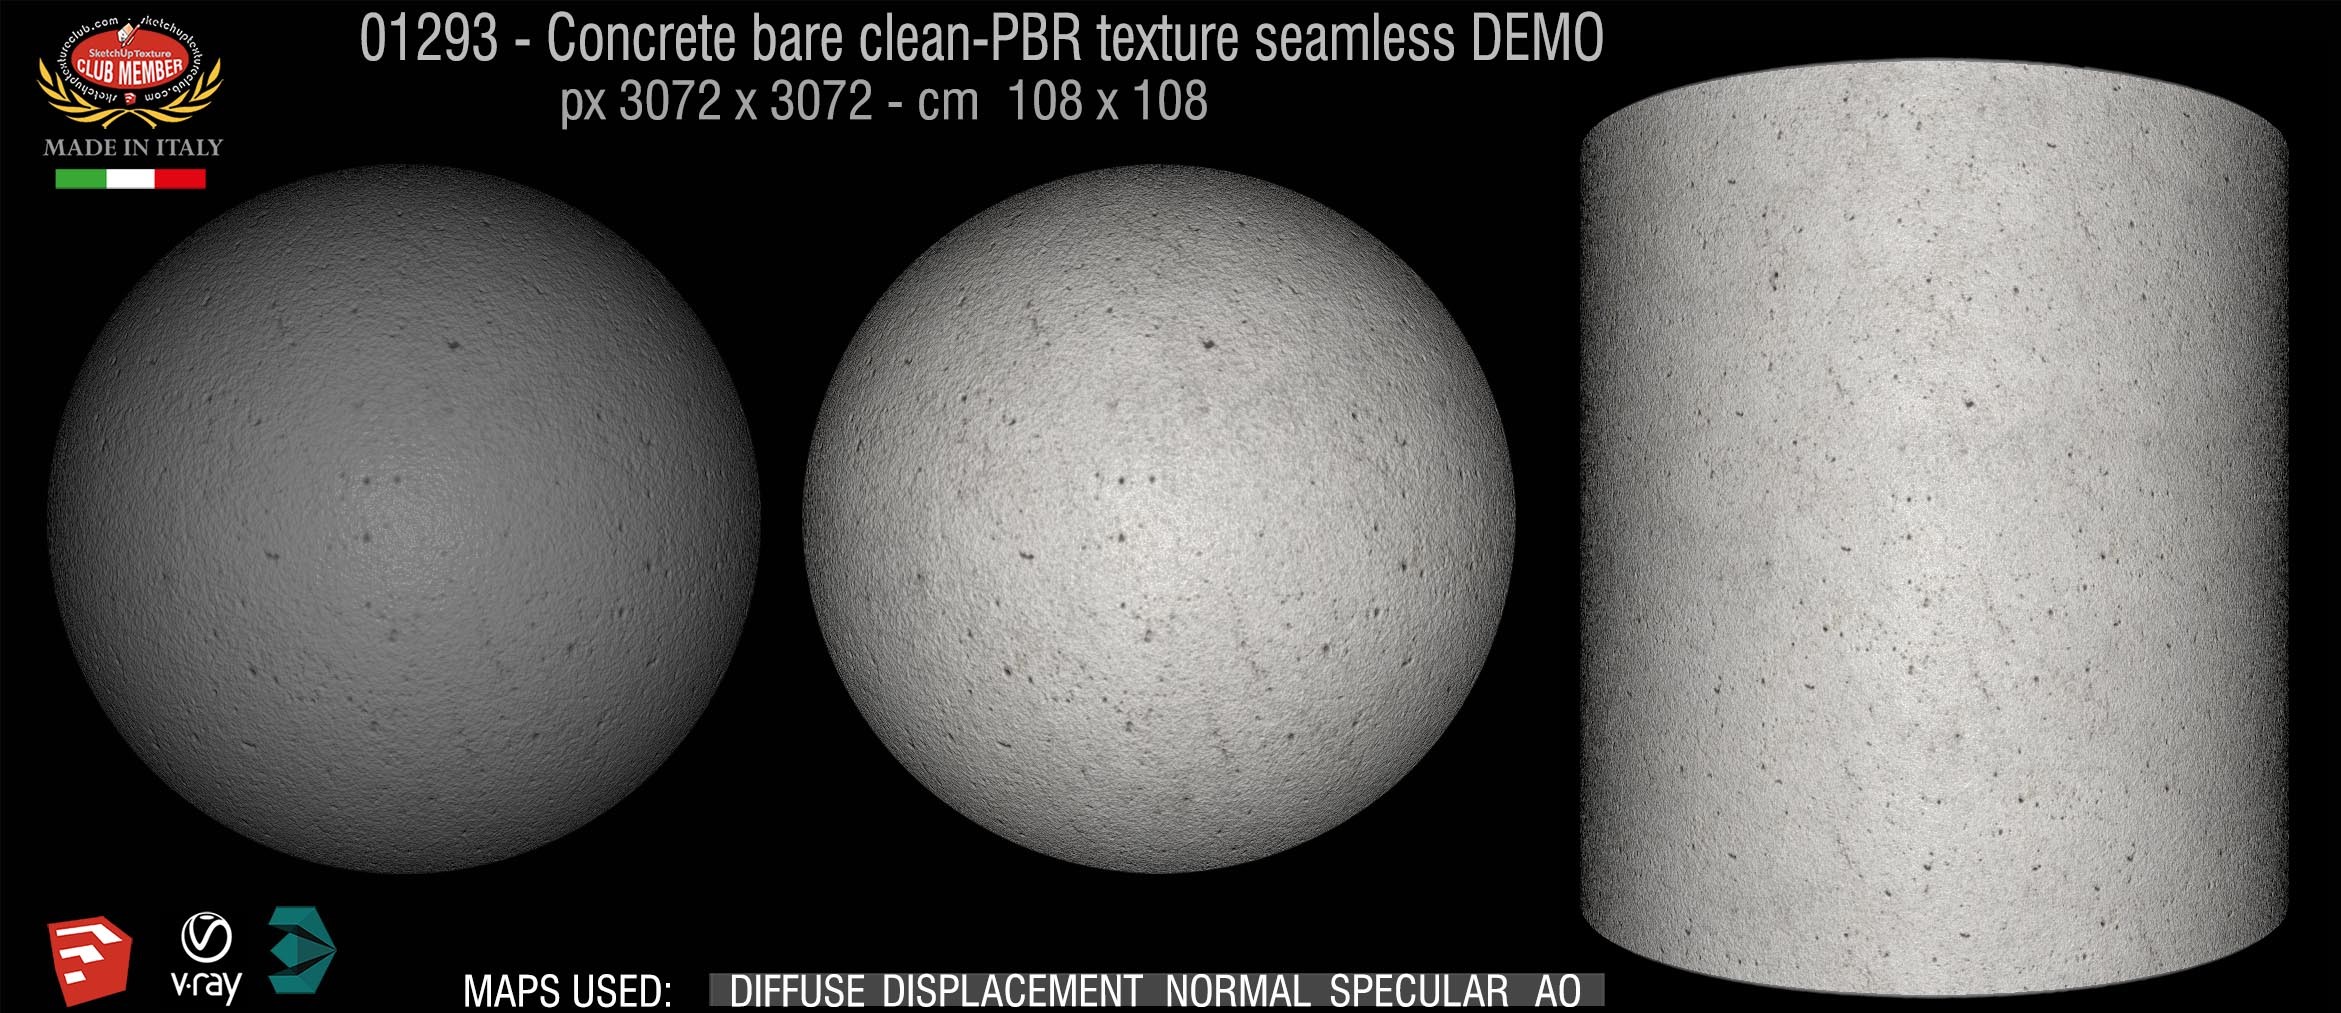 01293 Concrete bare clean-PBR texture seamless DEMO